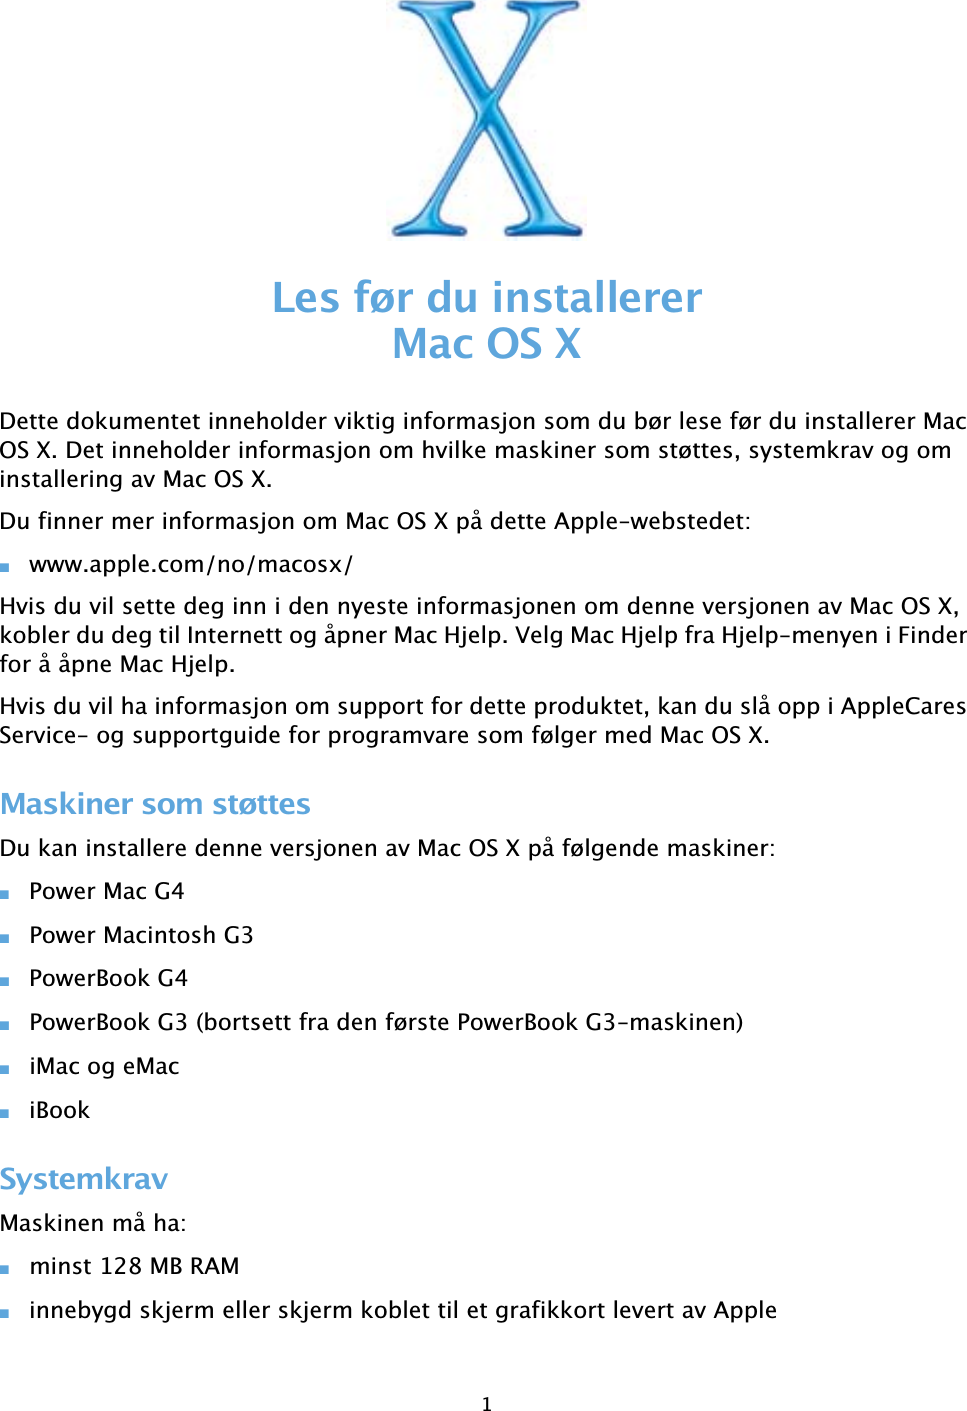 Apple mac manual